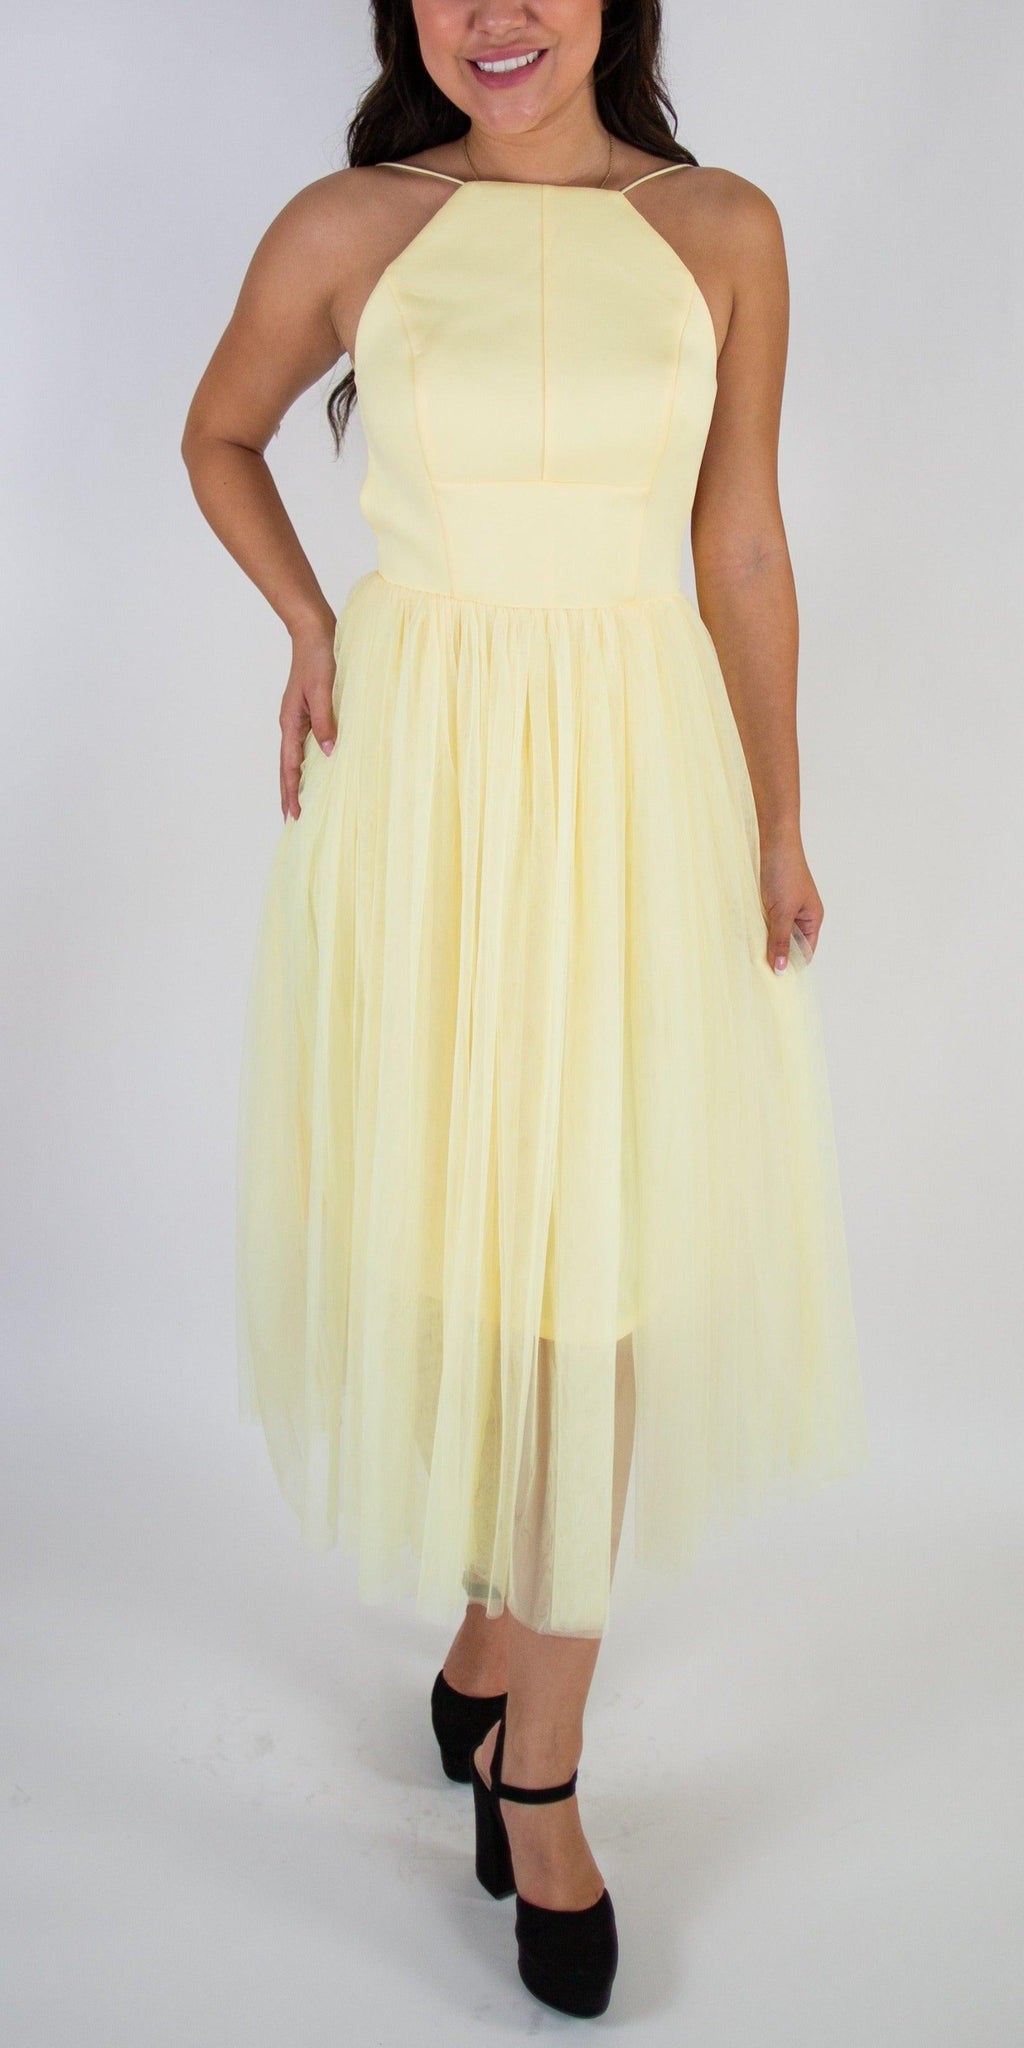 Scuba Pinny Dress - Simply Borrowed Dresses